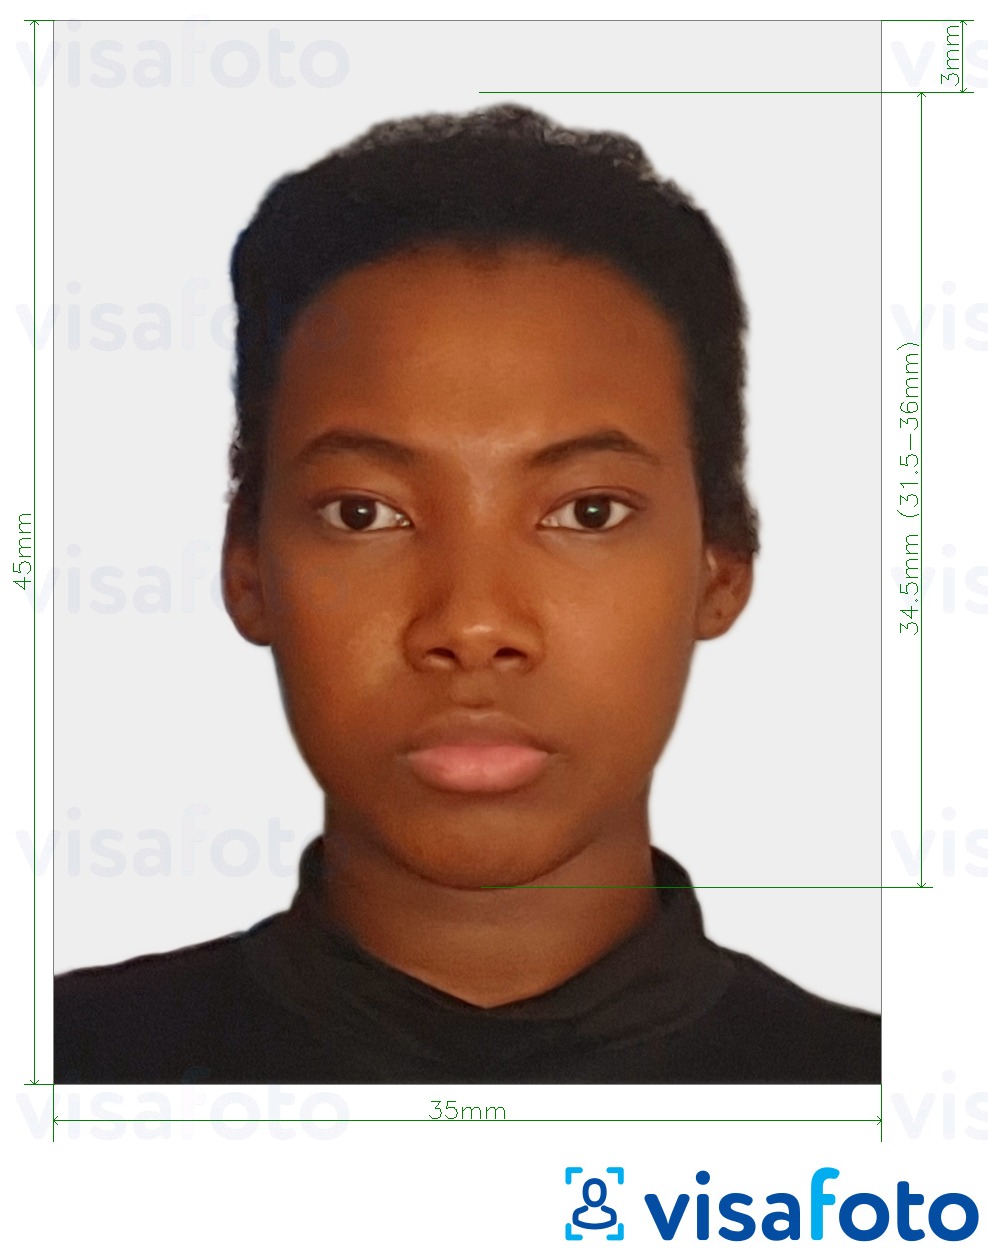 Ví dụ cho ảnh với Visa Suriname 45x35 mm (1,77x1,37 inch) cùng kích cỡ xác định chính xác.